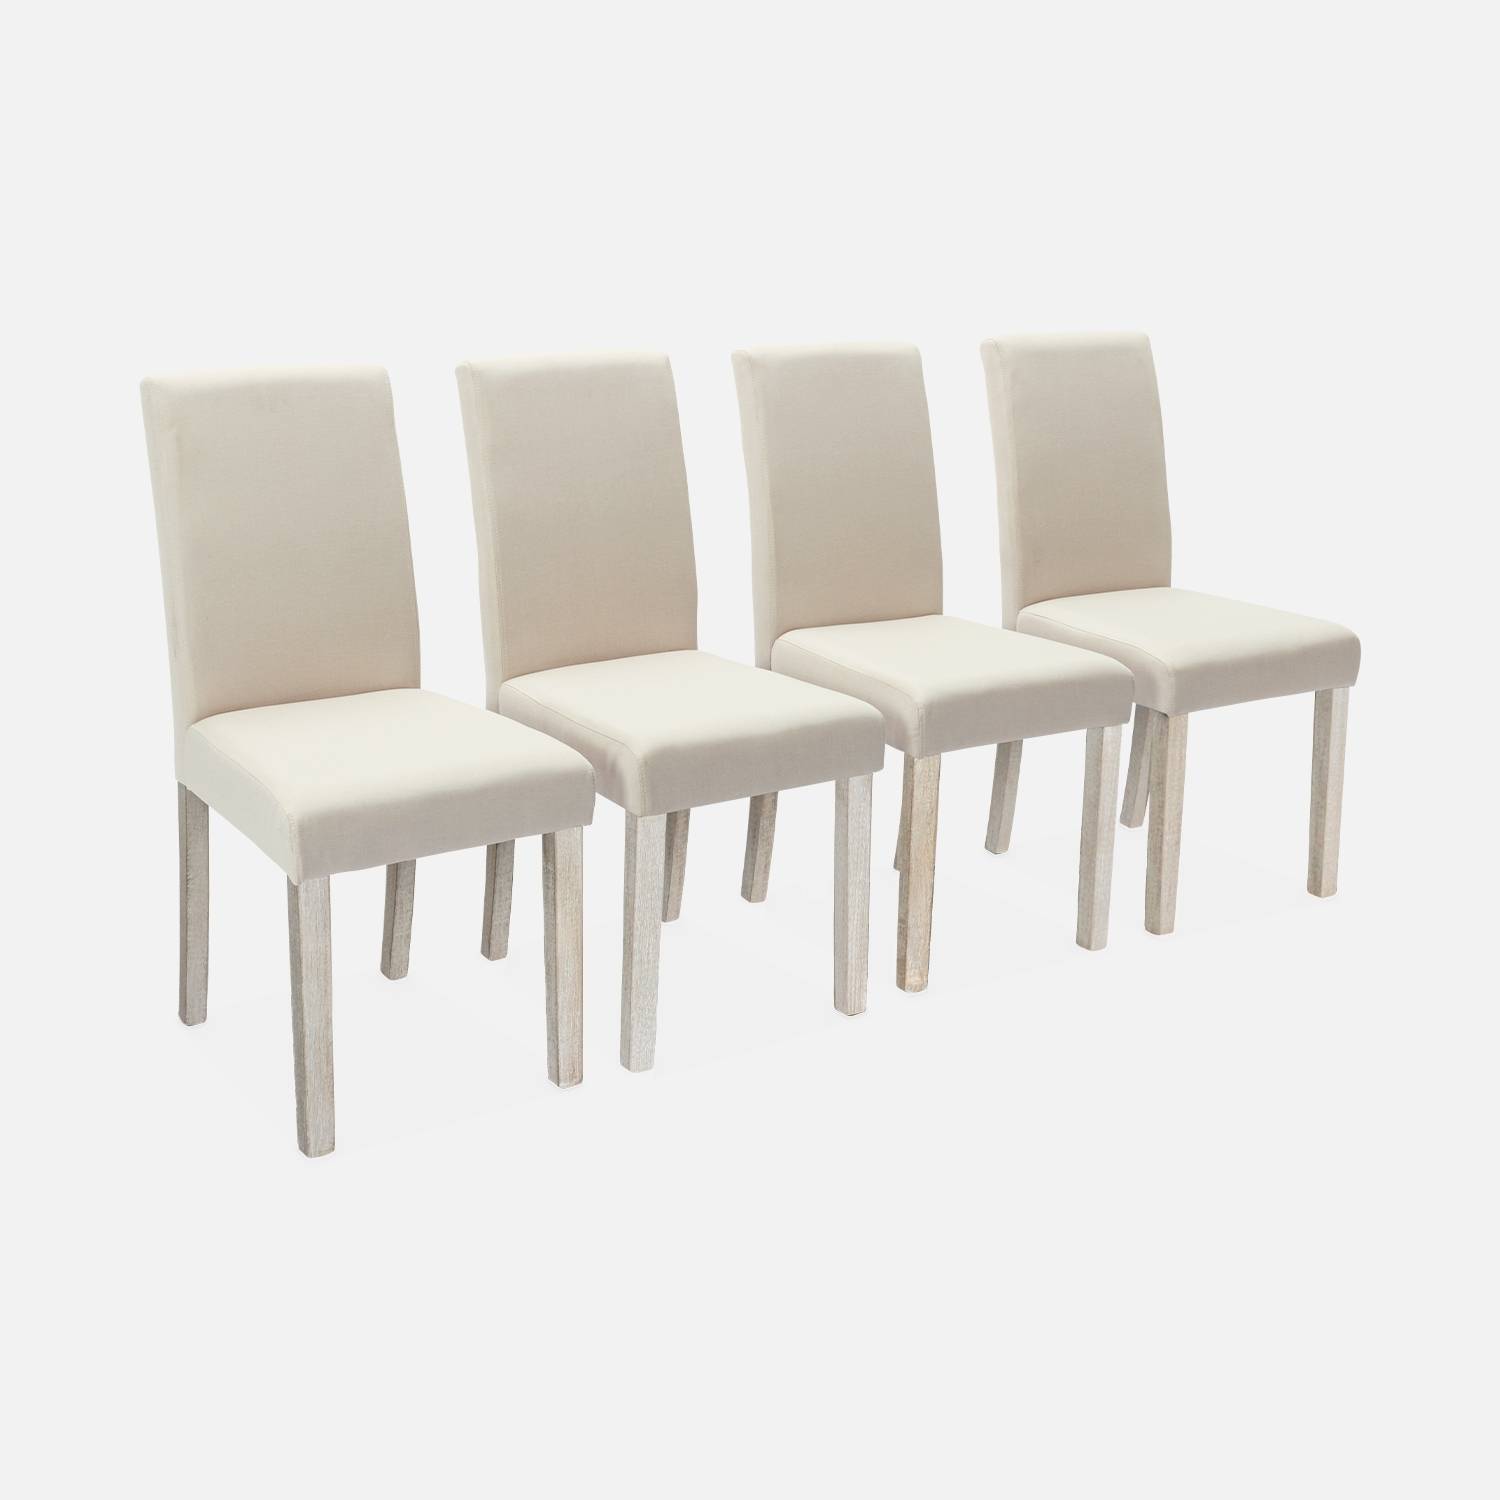 Juego de 4 sillas - Rita - sillas de tela beige, patas de madera  | sweeek